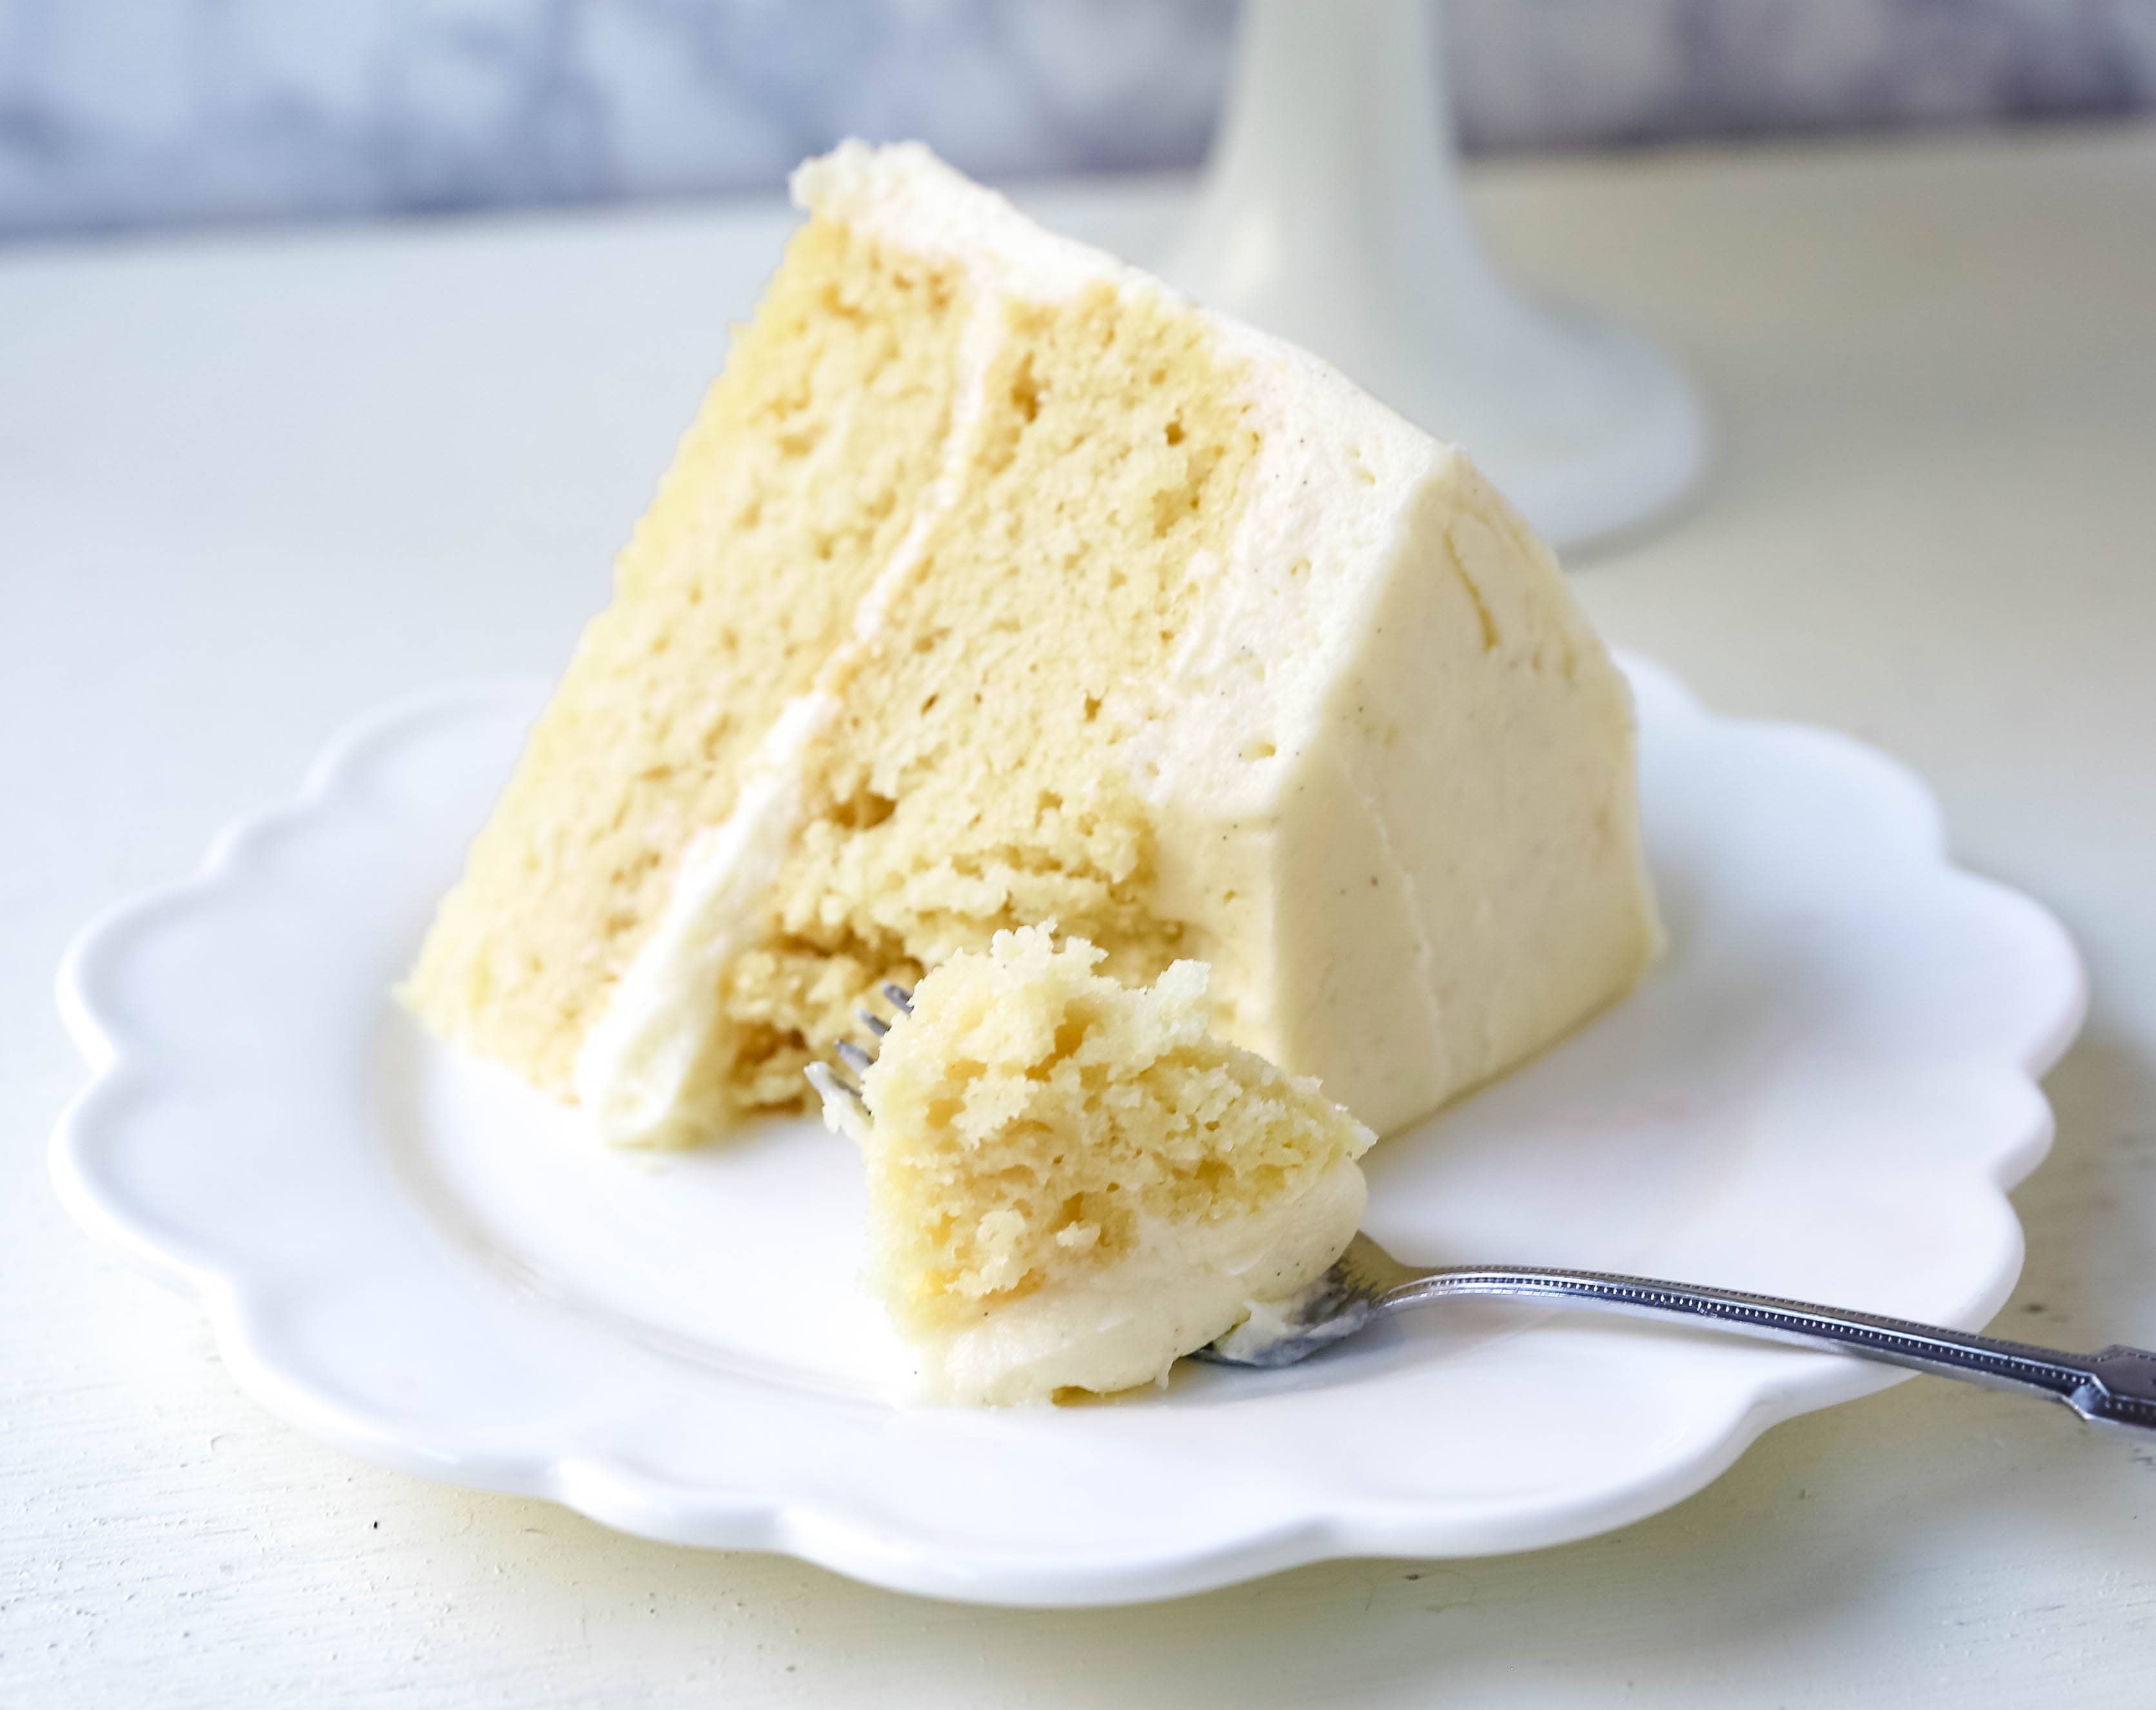 Vanilla Cake Recipe. The best homemade vanilla cake recipe with vanilla bean buttercream frosting. www.modernhoney.com #vanillacake #cake #cakerecipe #vanillacakerecipe